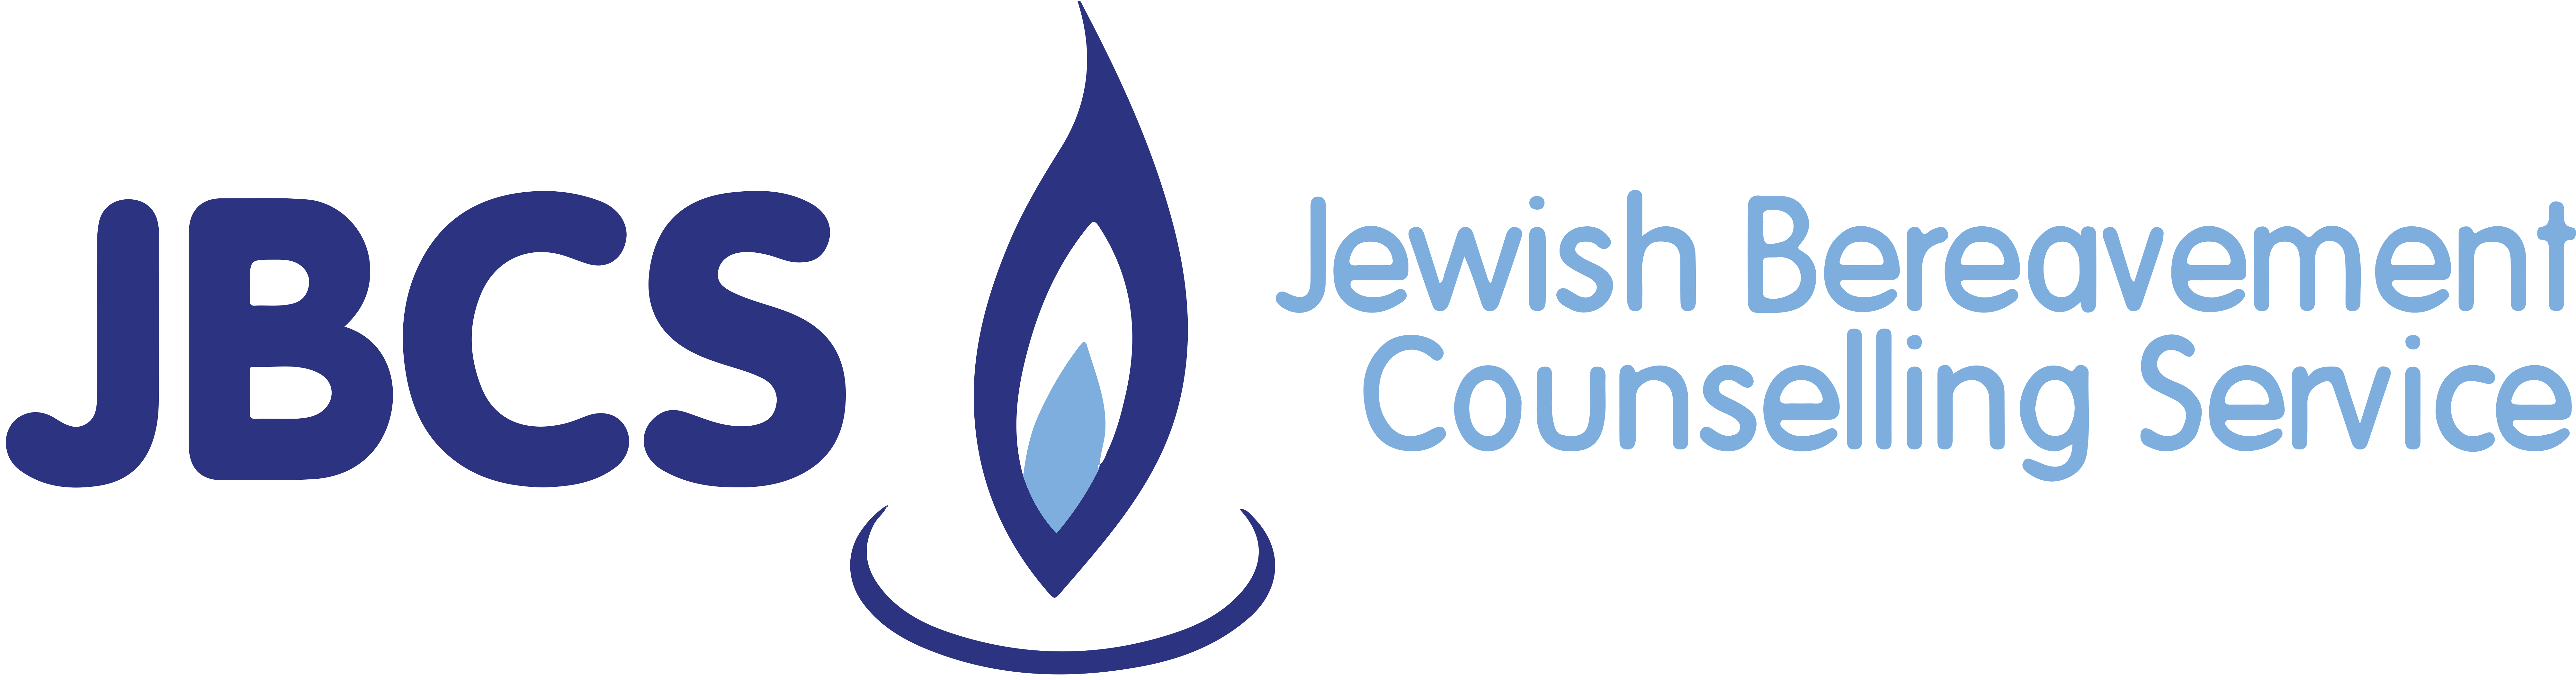 Jewish Bereavement Counselling Service